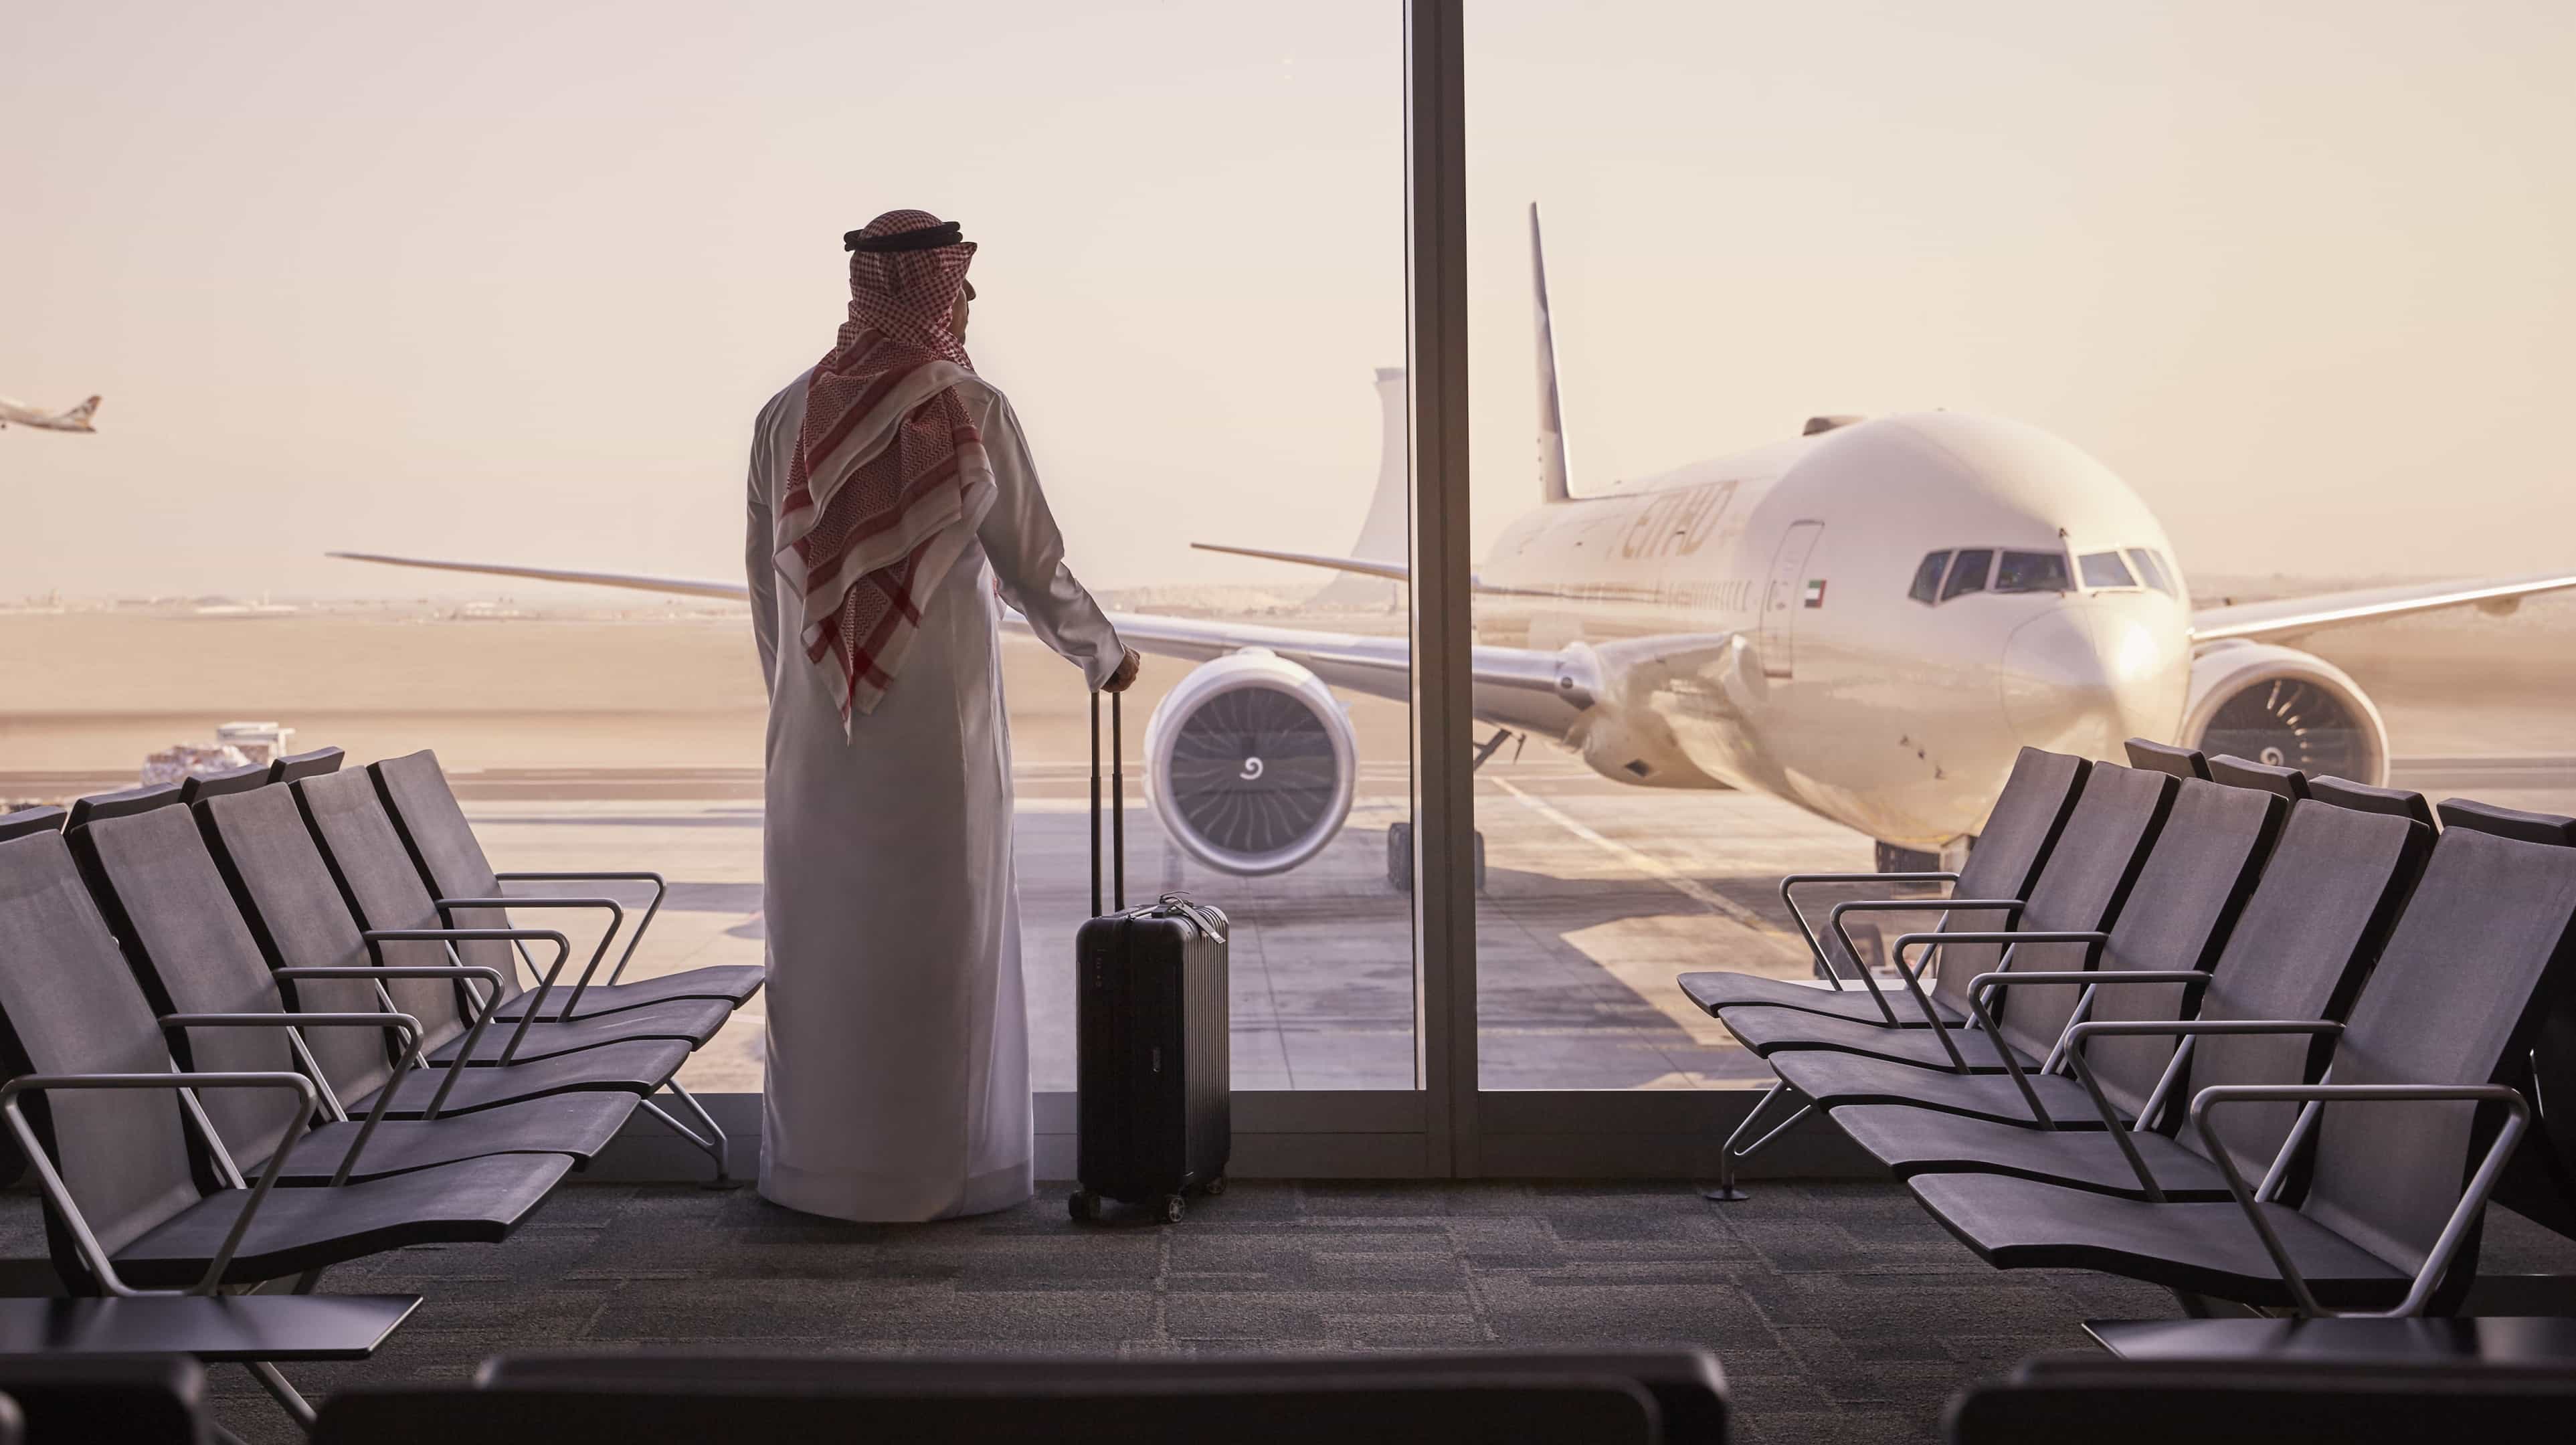 Passagers attendant leur avion commercial à l'aéroport d'Abu Dhabi pour des voyages d'affaires ou des vacances.